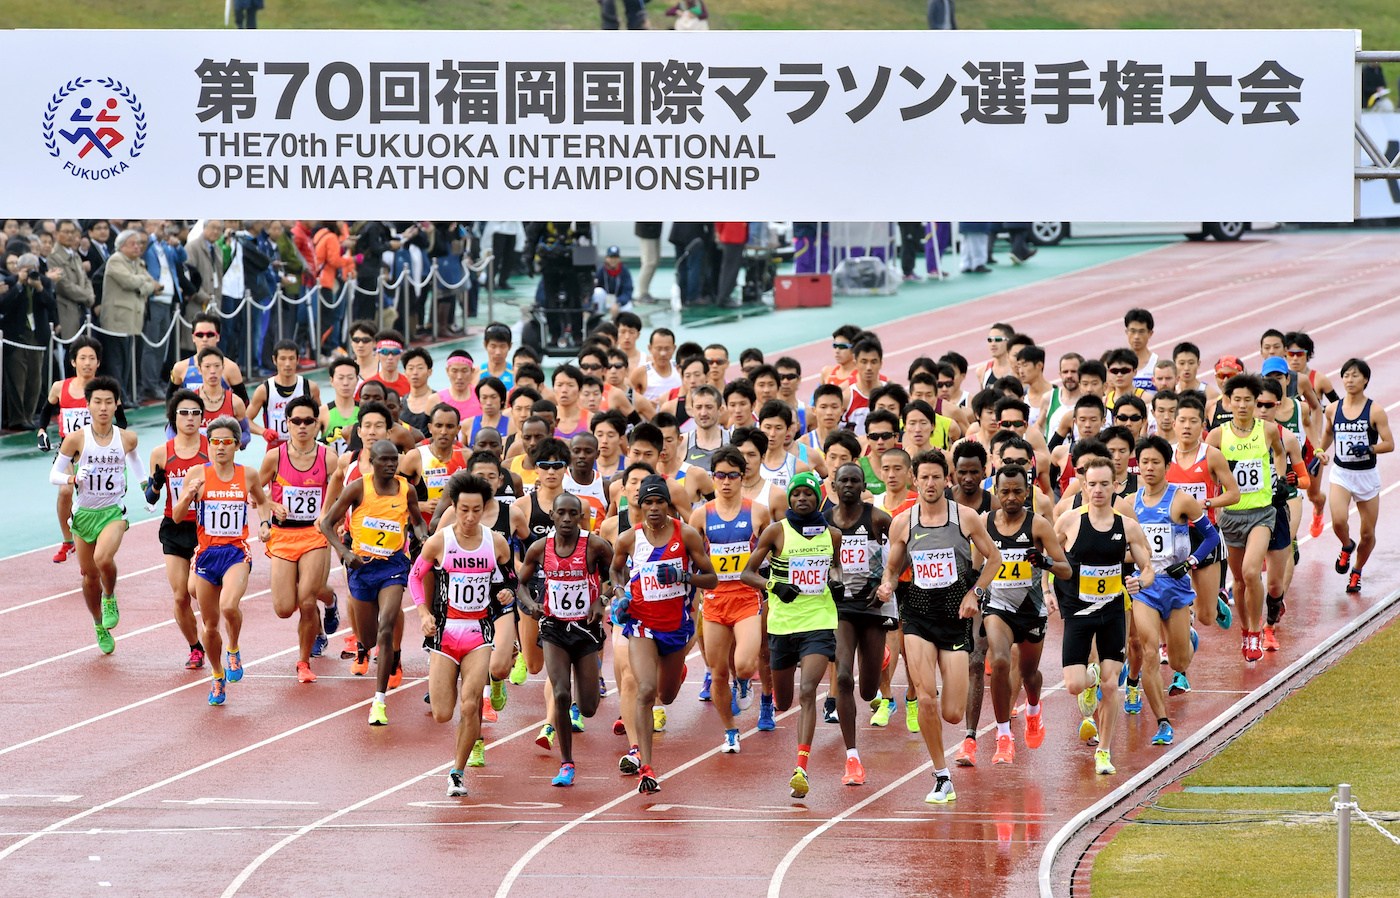 Maratón Internacional de Fukuoka: Un auto chocó a un runner